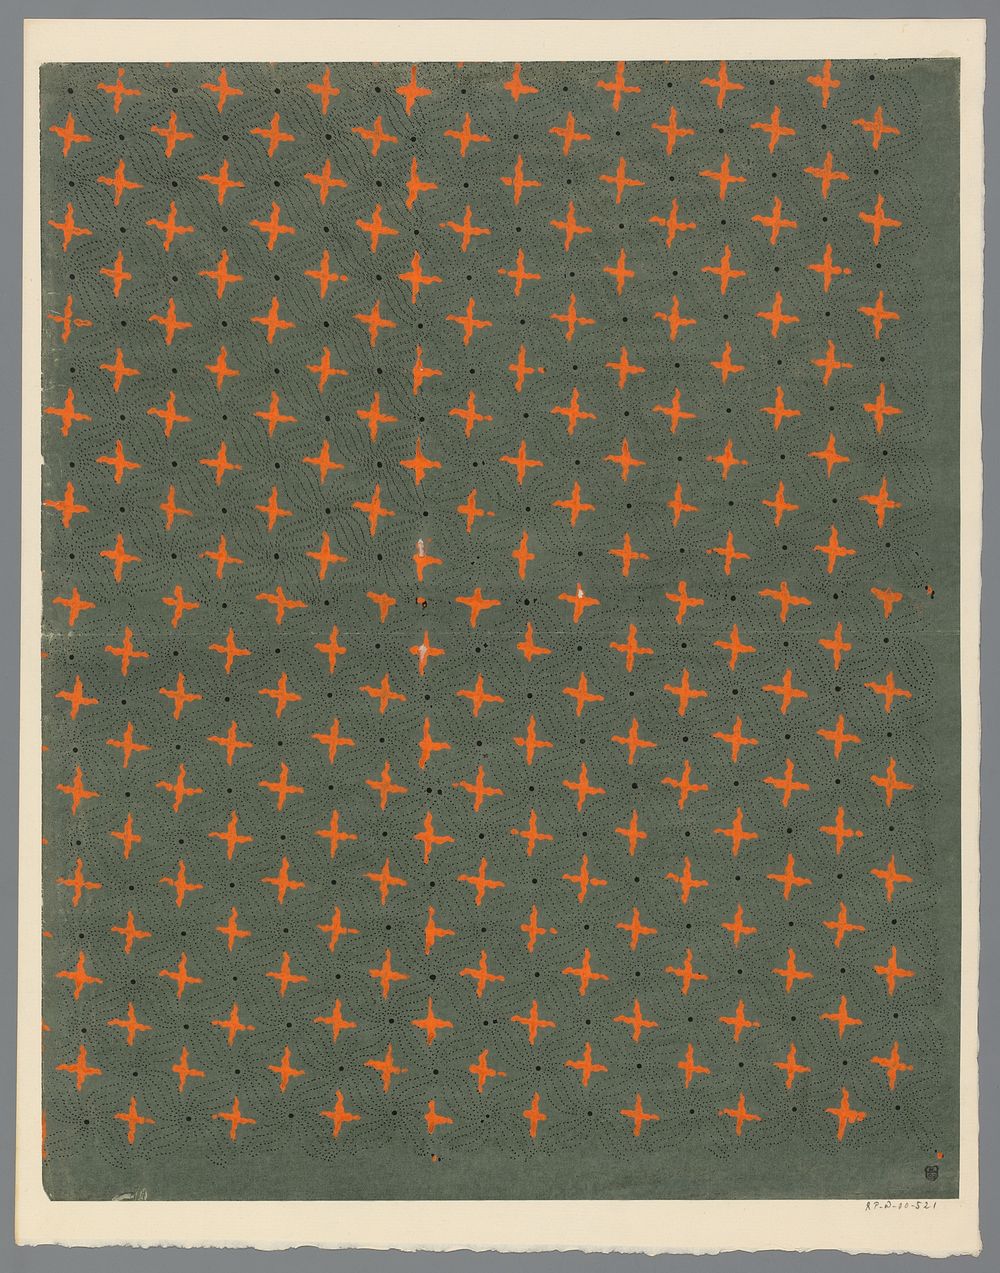 Blad met strooipatroon van kruismotief tussen een kruis van golvende stippellijnen (1800 - 1900) by anonymous